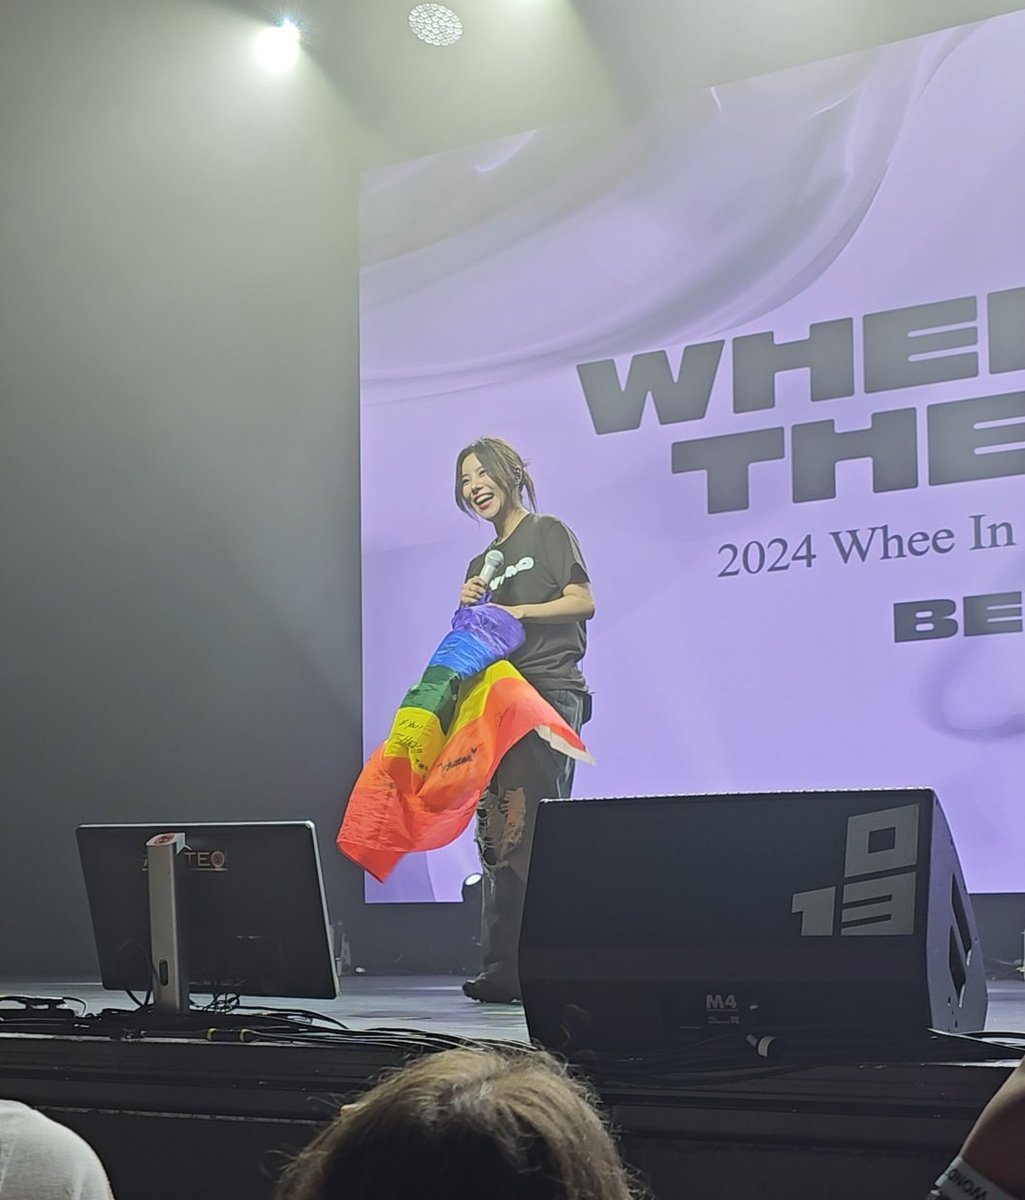 Registro mais lindo do show de hoje: #WHEEIN toda felizona segurando a bandeira do arco íris 🌈❤

#WheeinInTilburg